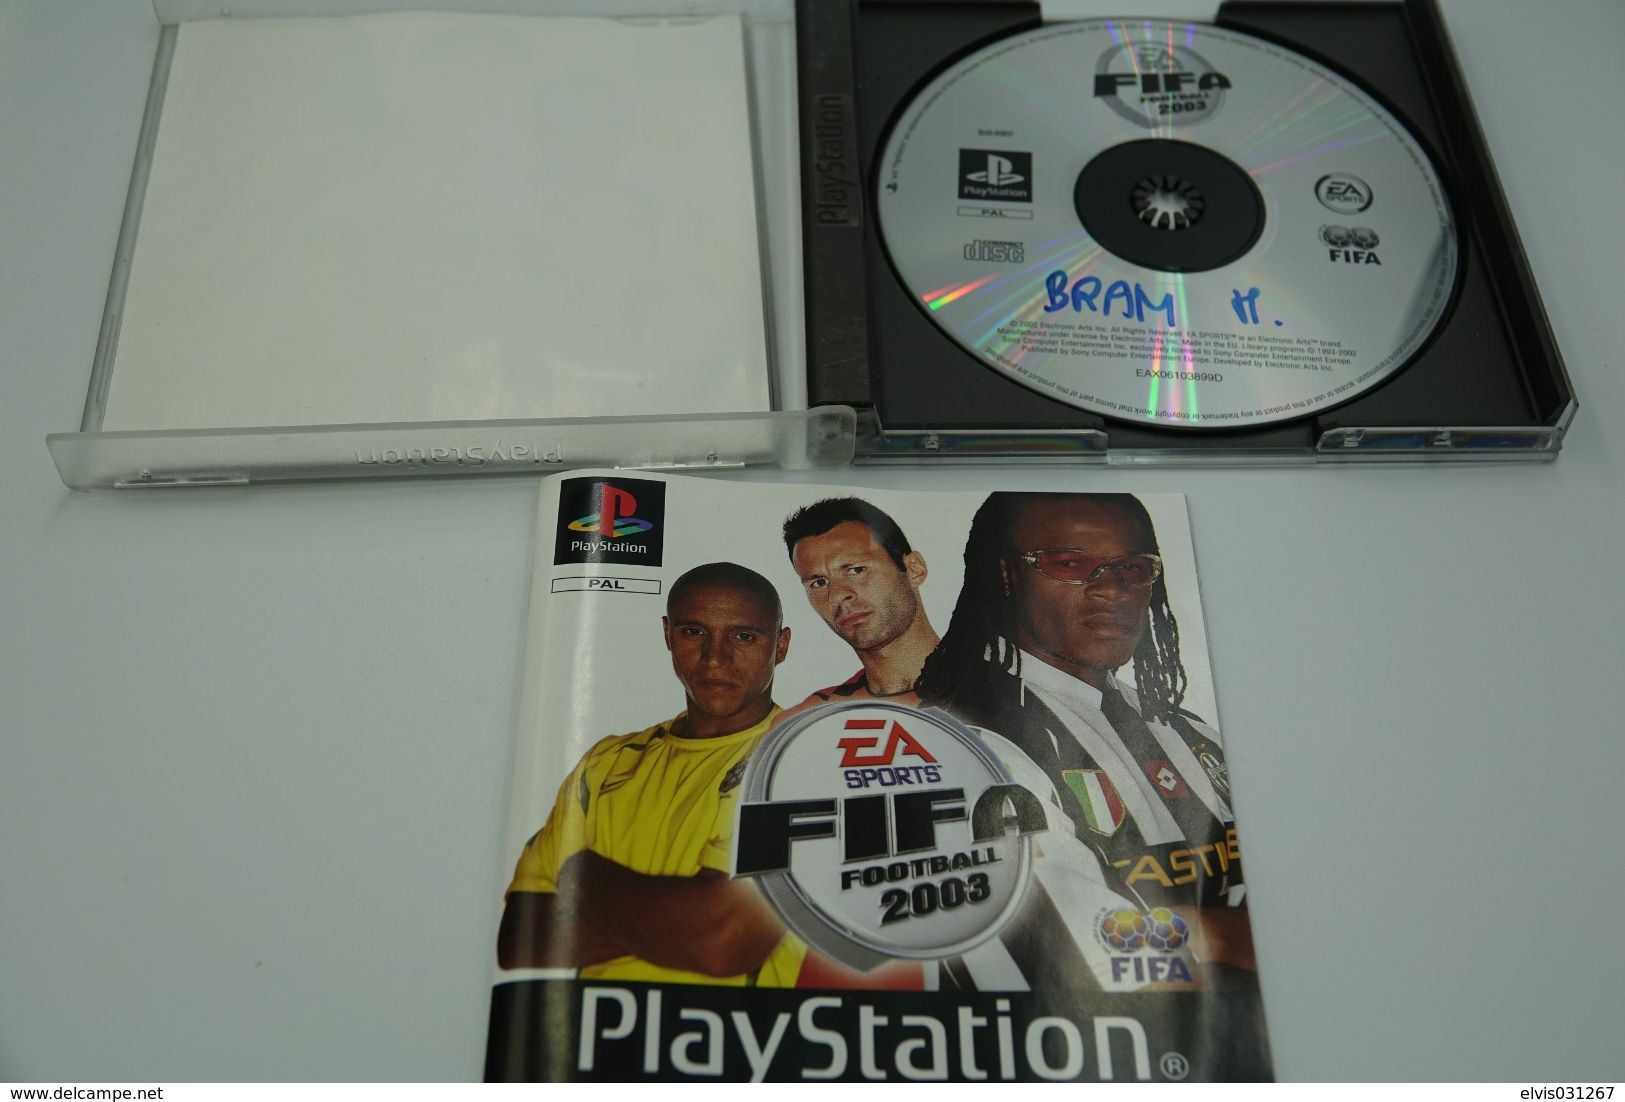 SONY PLAYSTATION ONE PS1 : FIFA FOOTBALL 2003 - Playstation